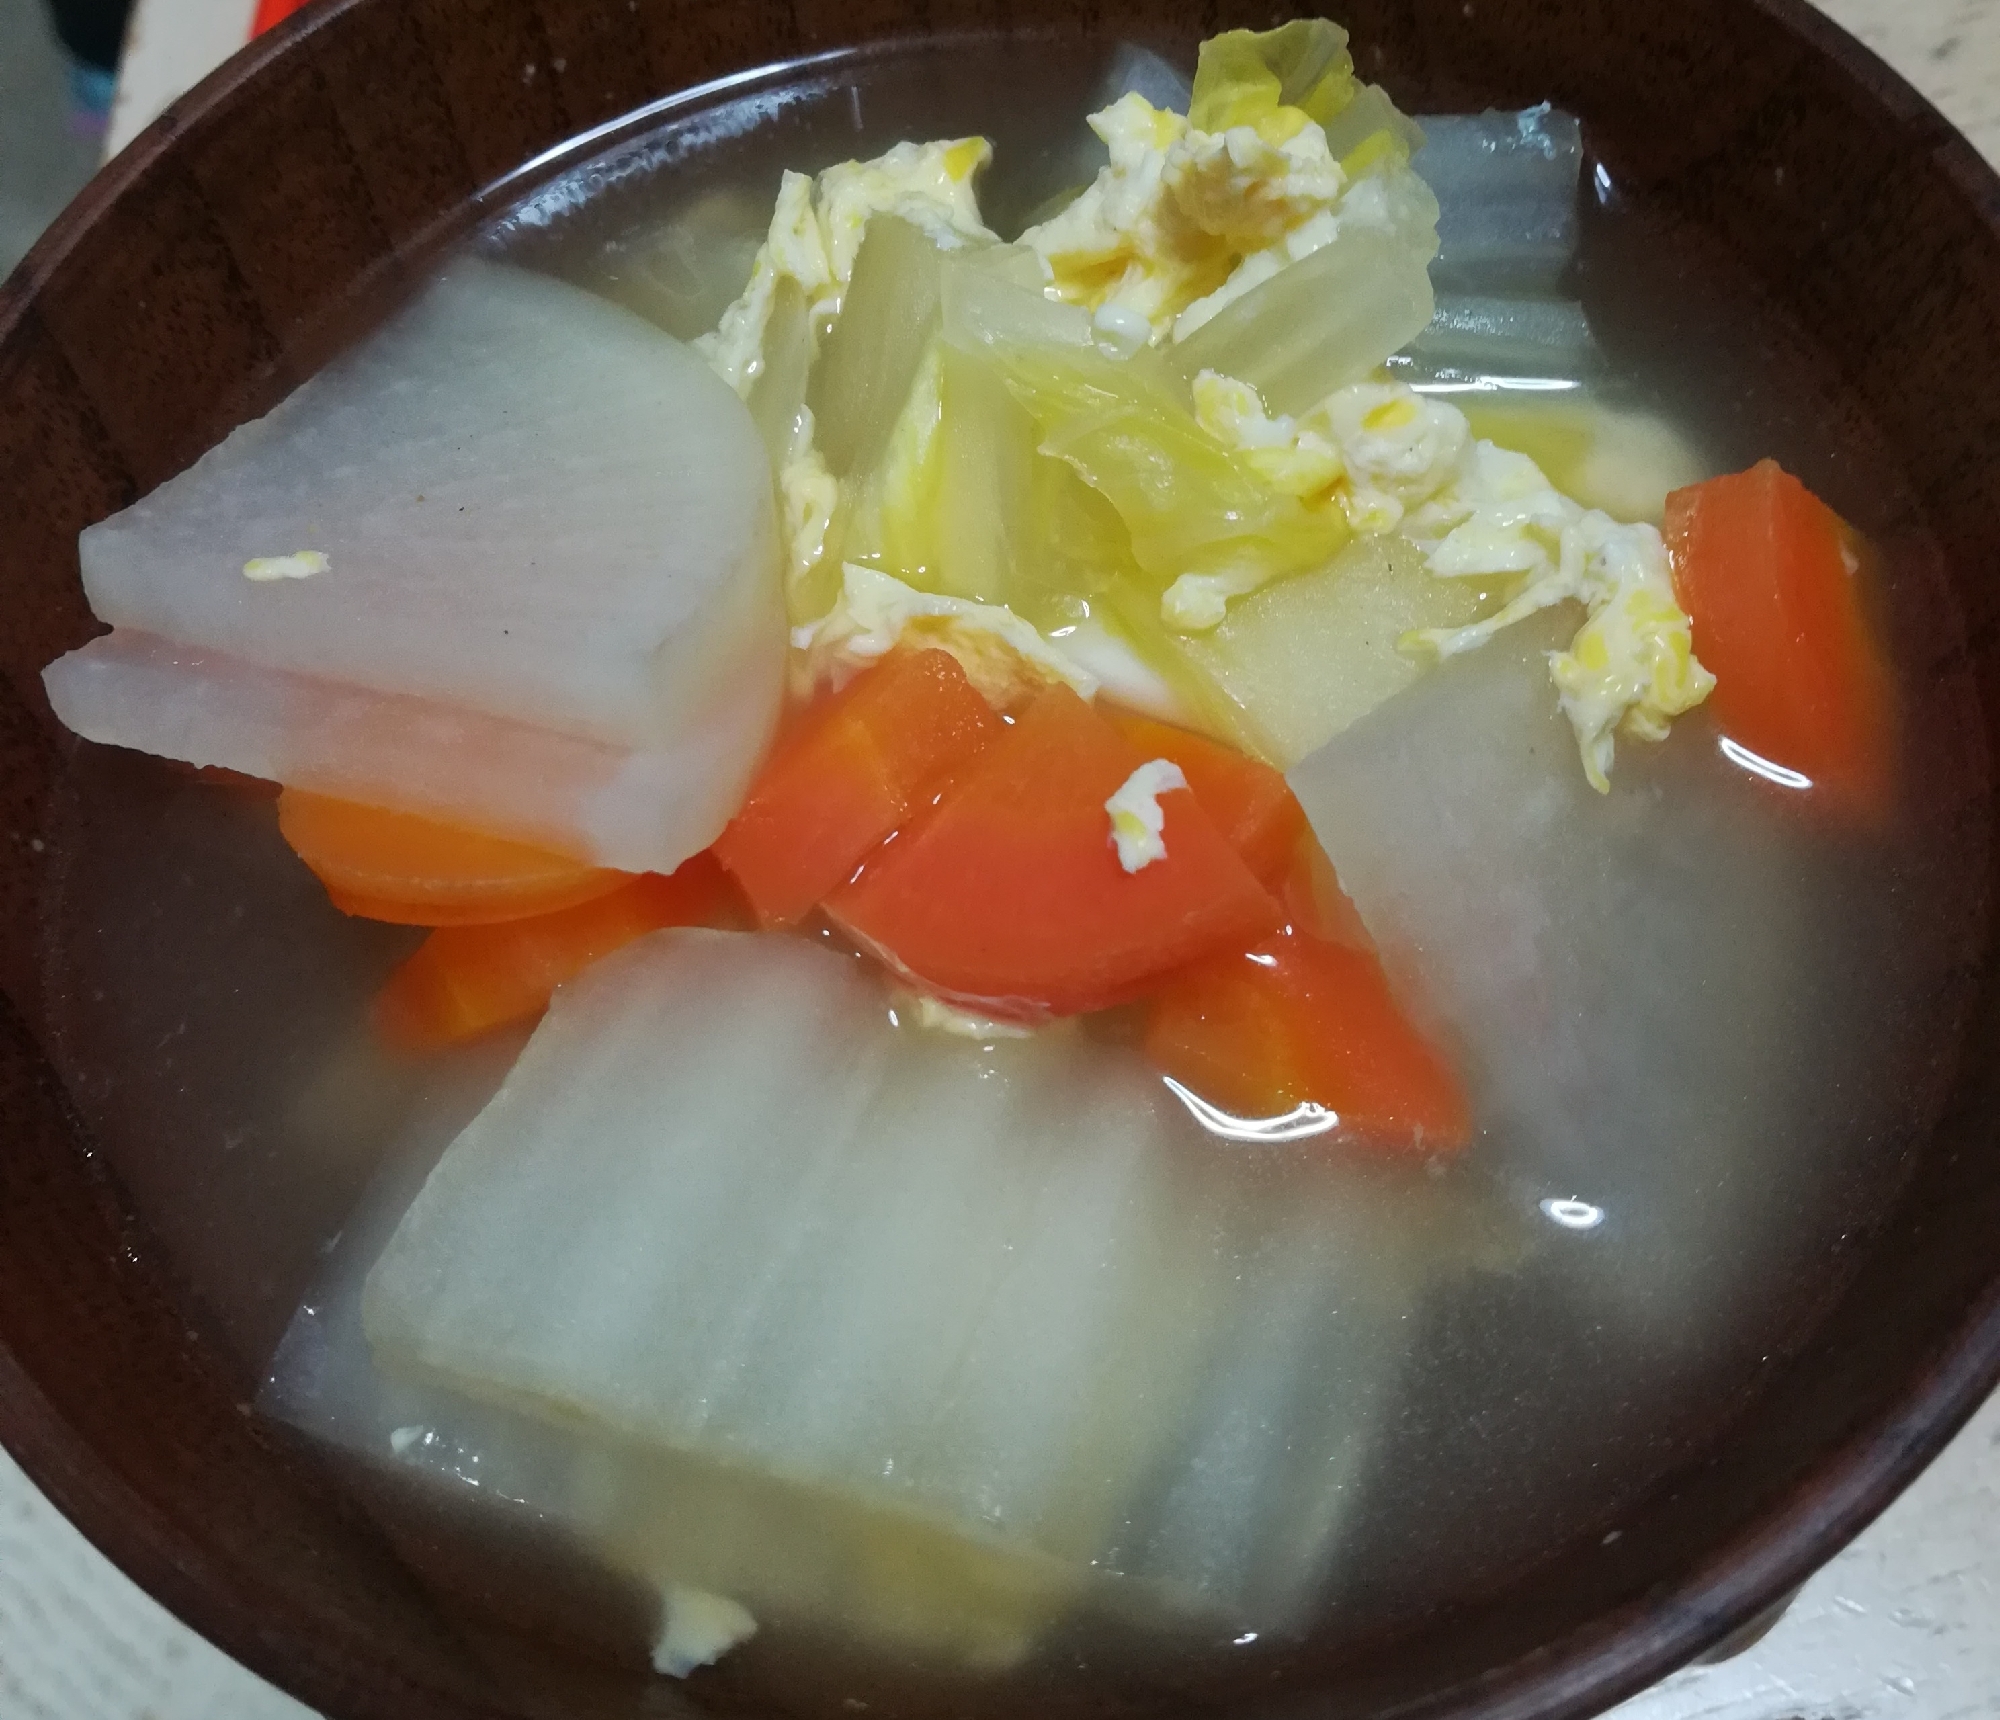 白菜と大根のスープ